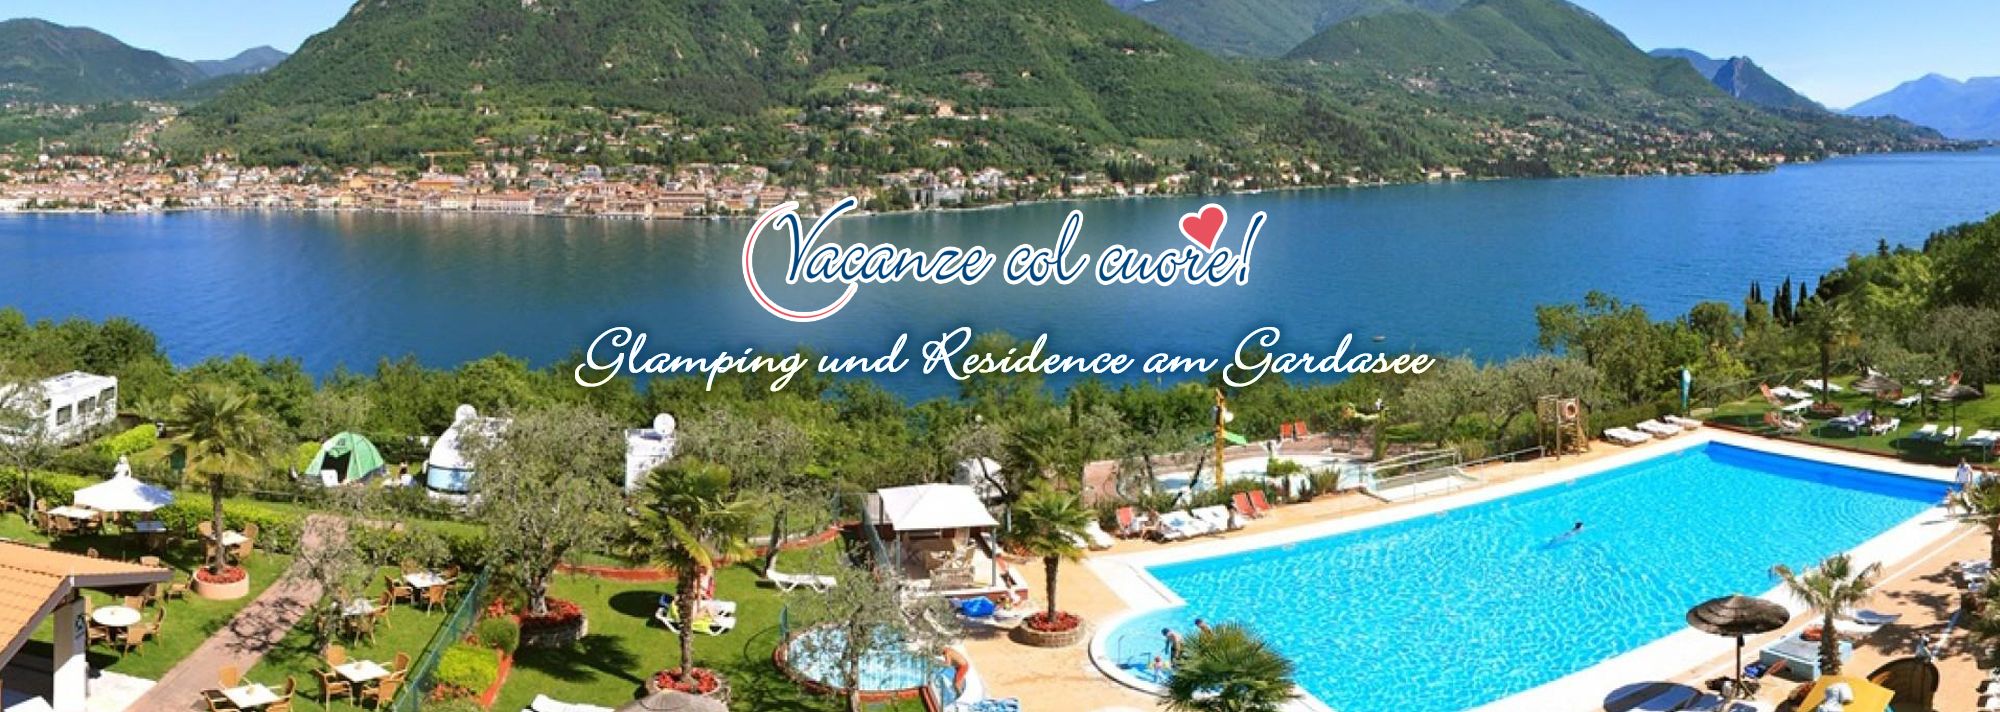 www.vacanzecolcuore.com/de/Gardasee